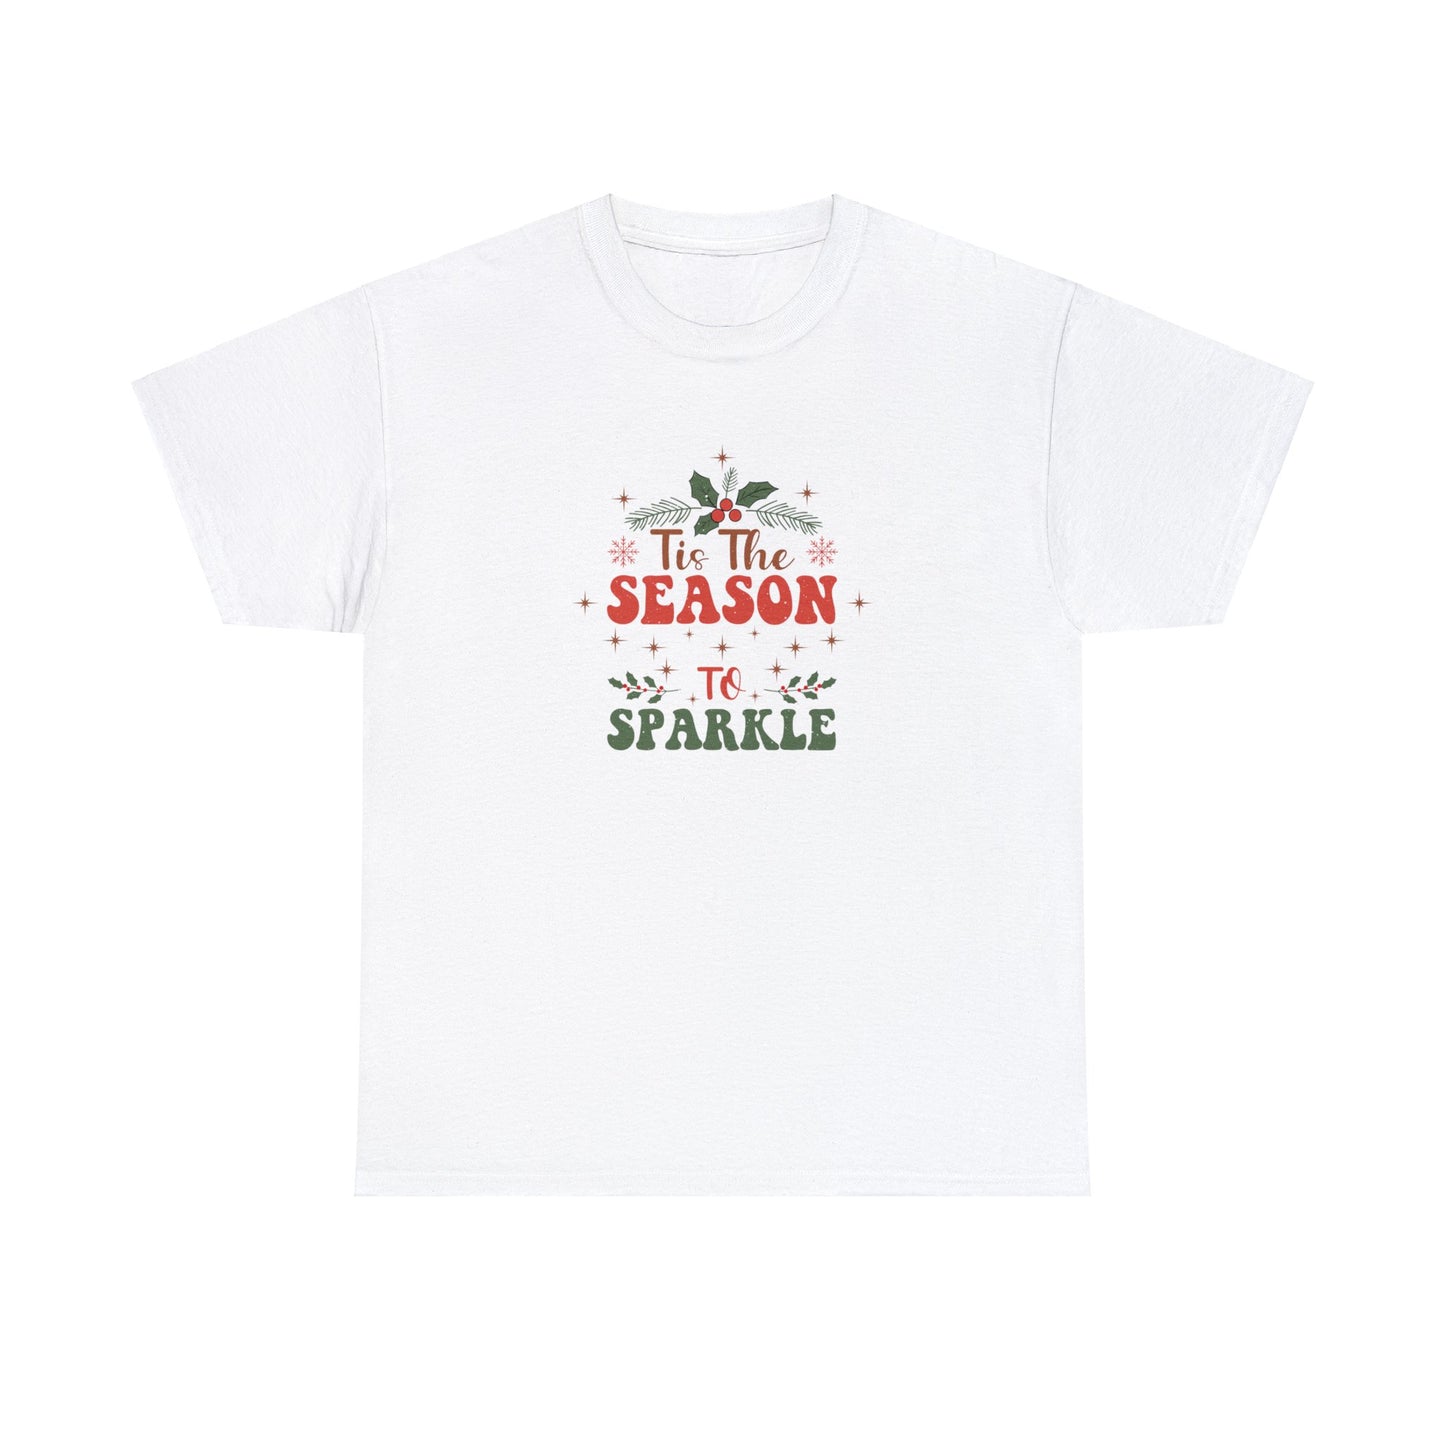 Tis the season to sparkle - Christmas T-shirt